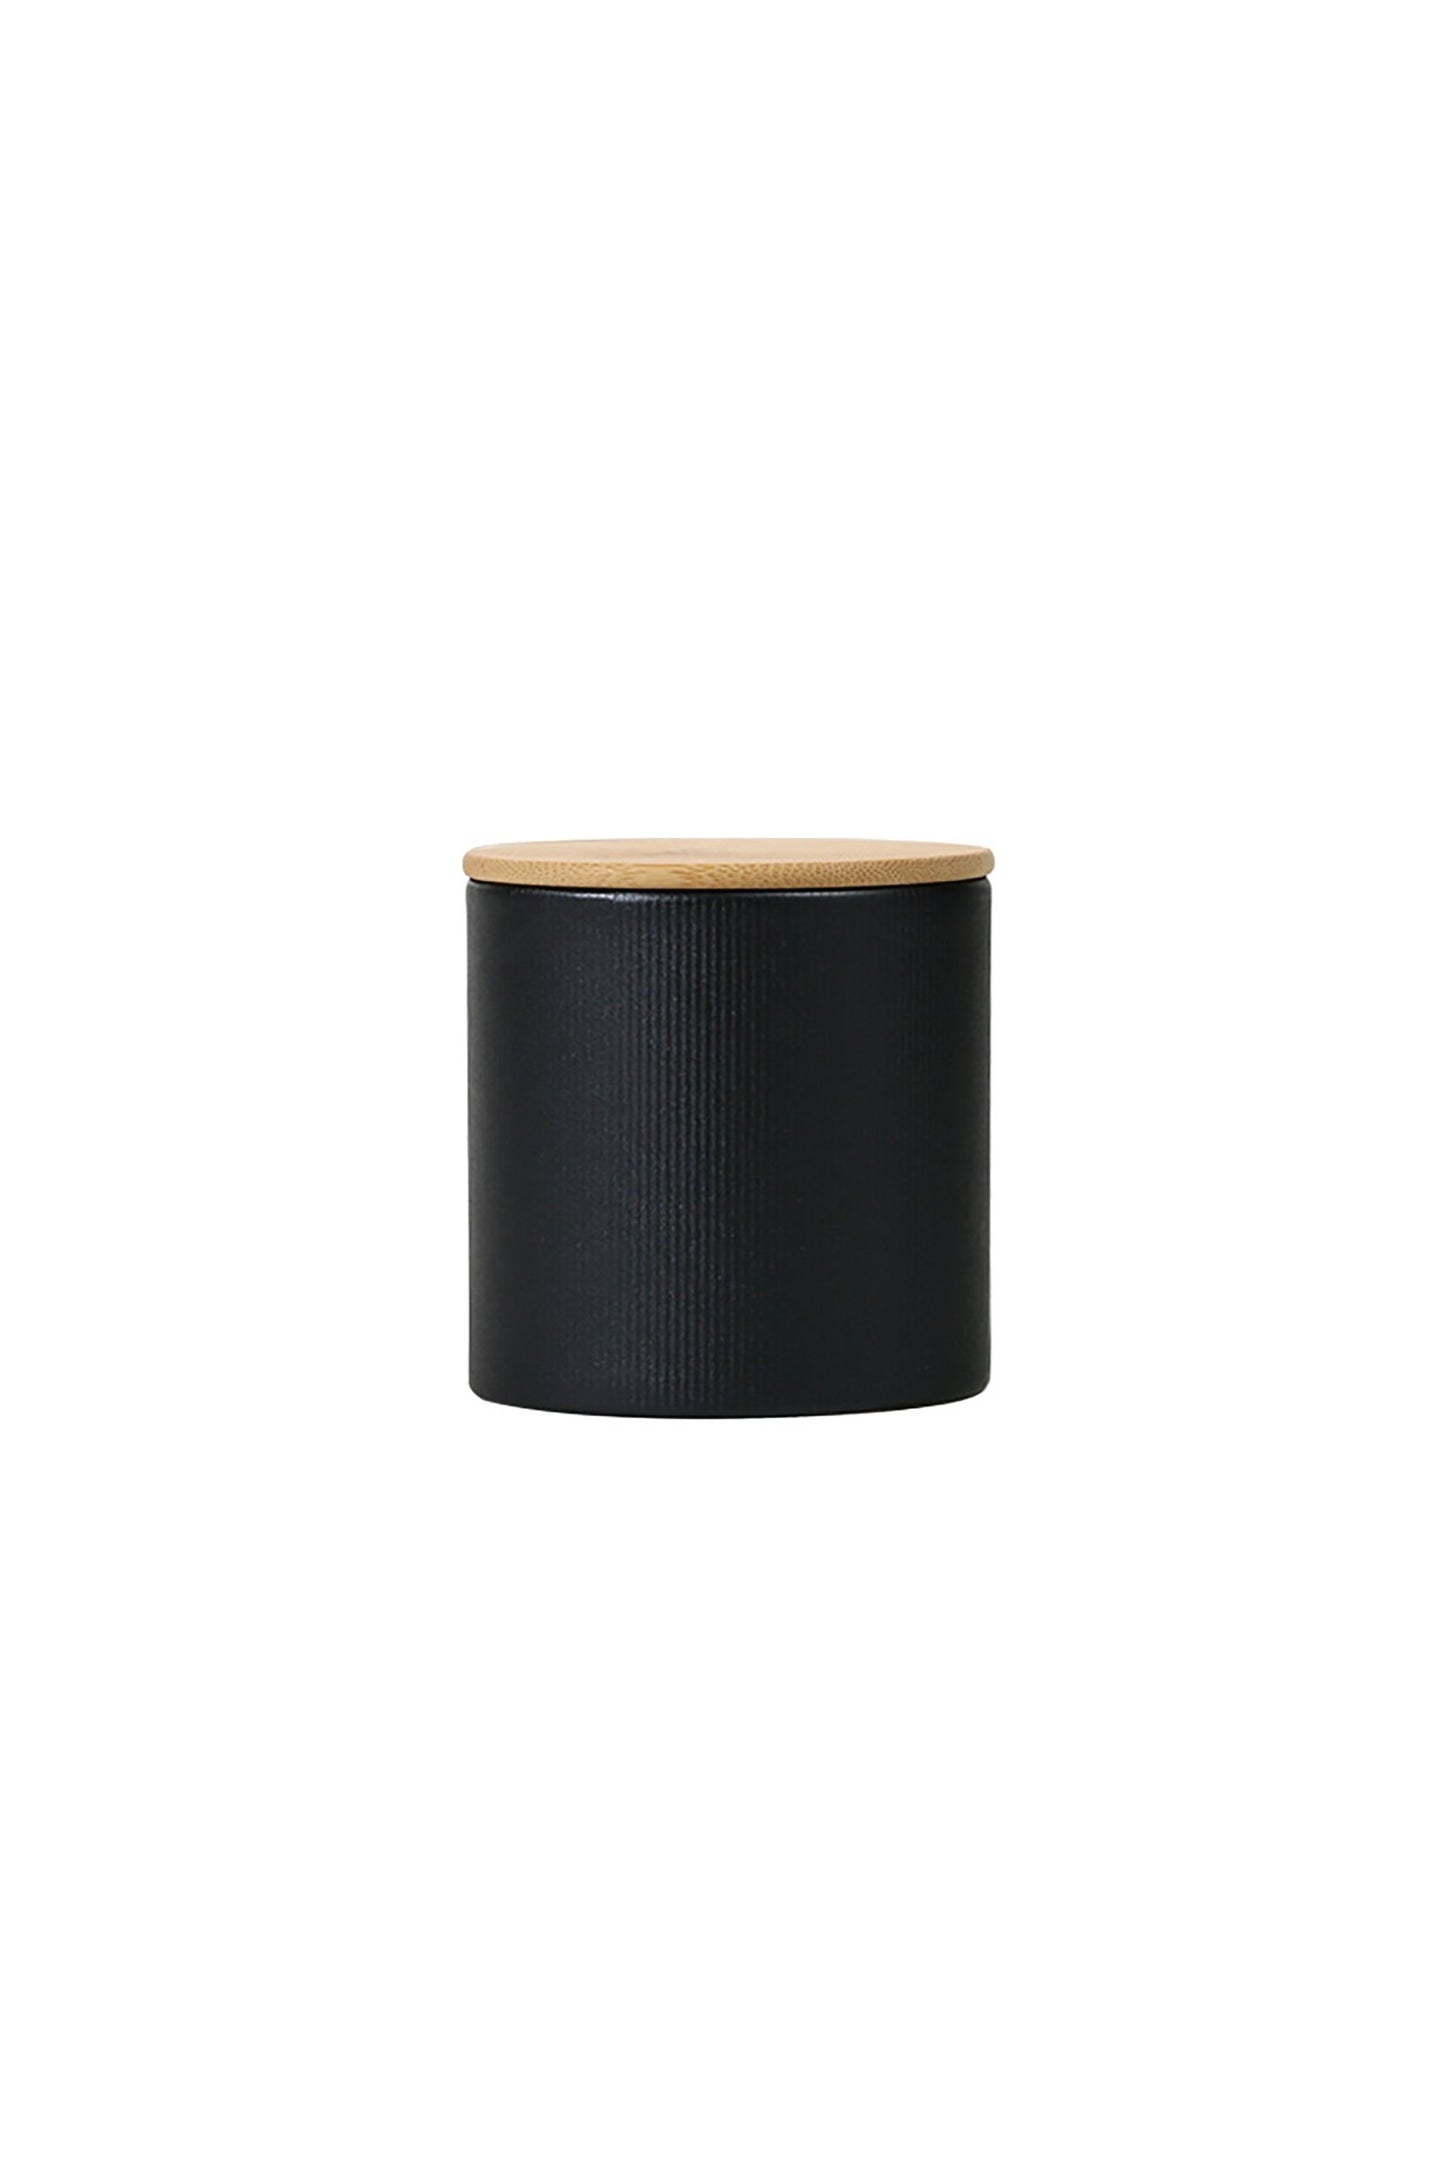 Paper Jar with Bamboo Lids CGF0251 (Set of 4 pcs)